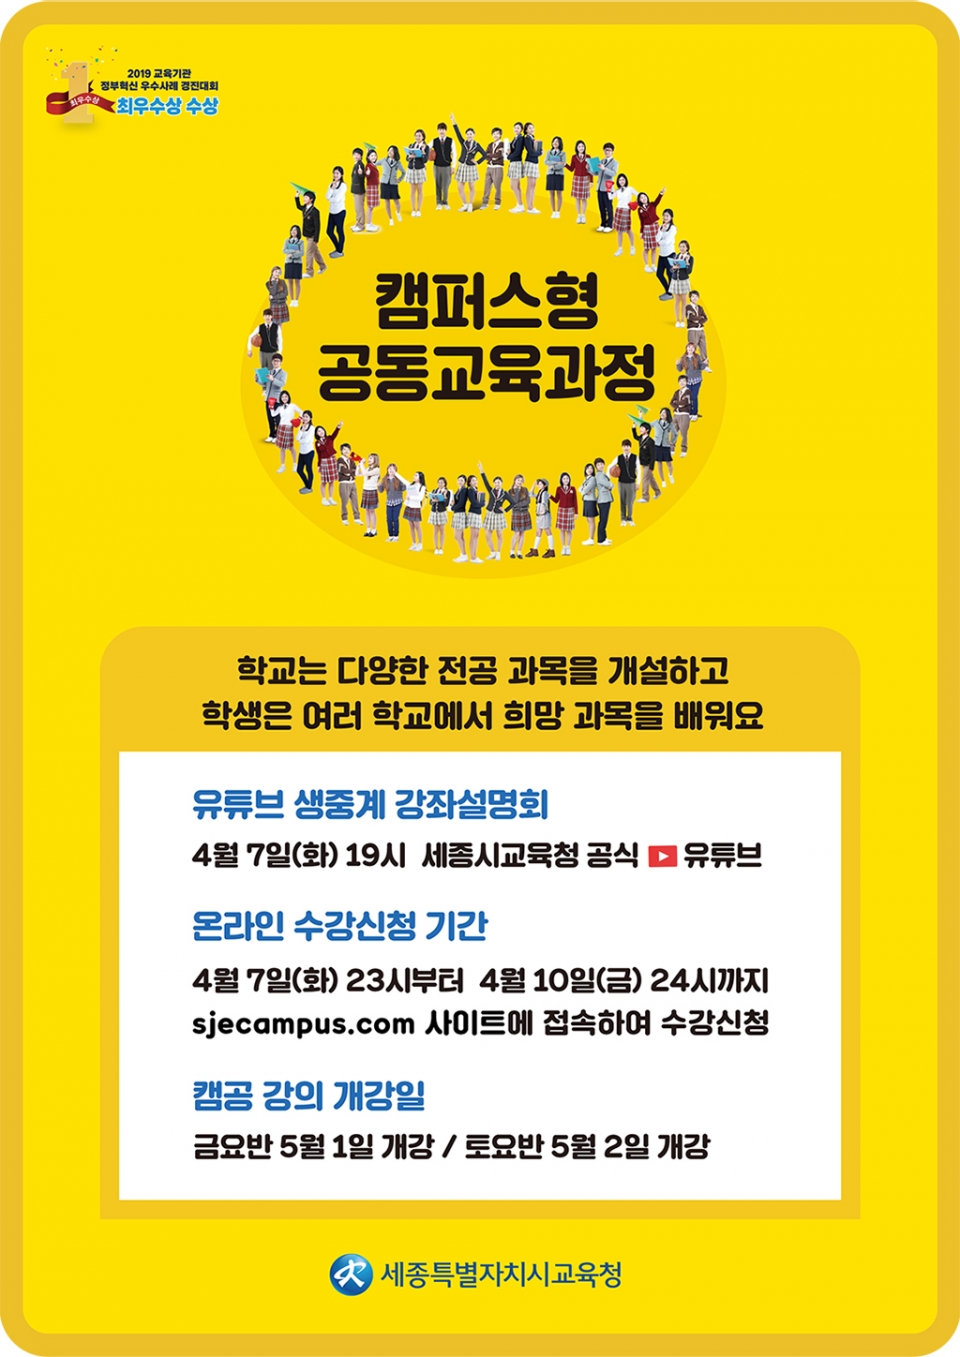 세종교육청 2020학년도 1학기 캠퍼스형공동교육과정 홍보 포스터.